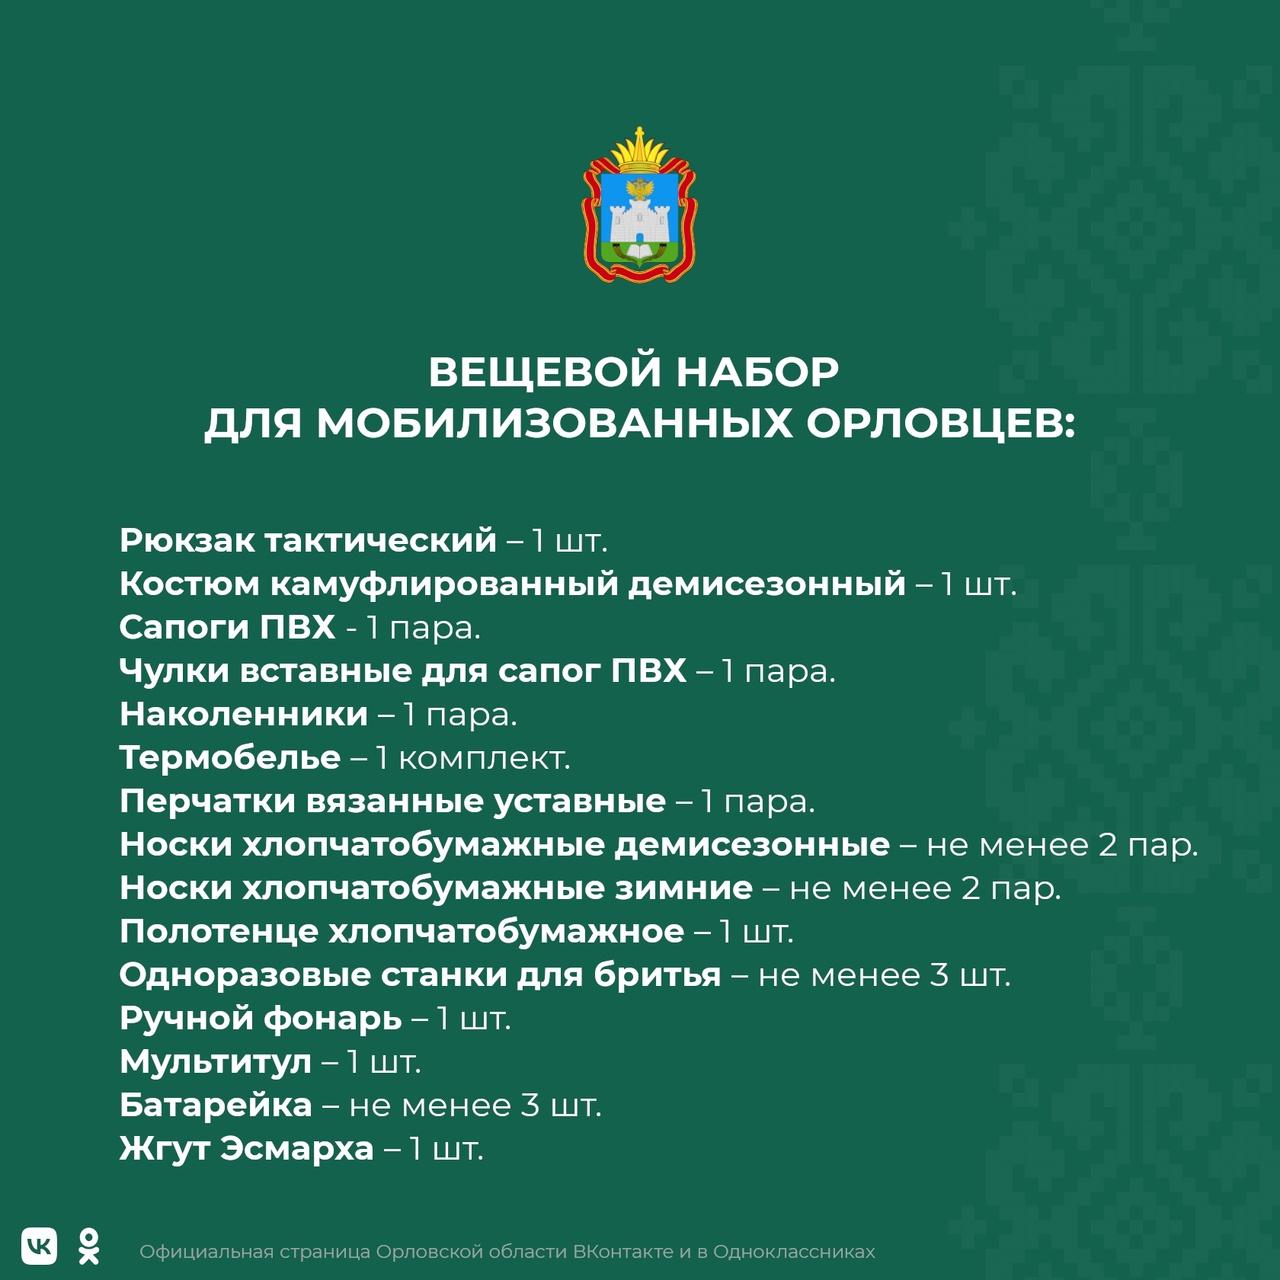 Из бюджета региона выделят 27 млн рублей на закупку вещевых наборов для мобилизованных граждан